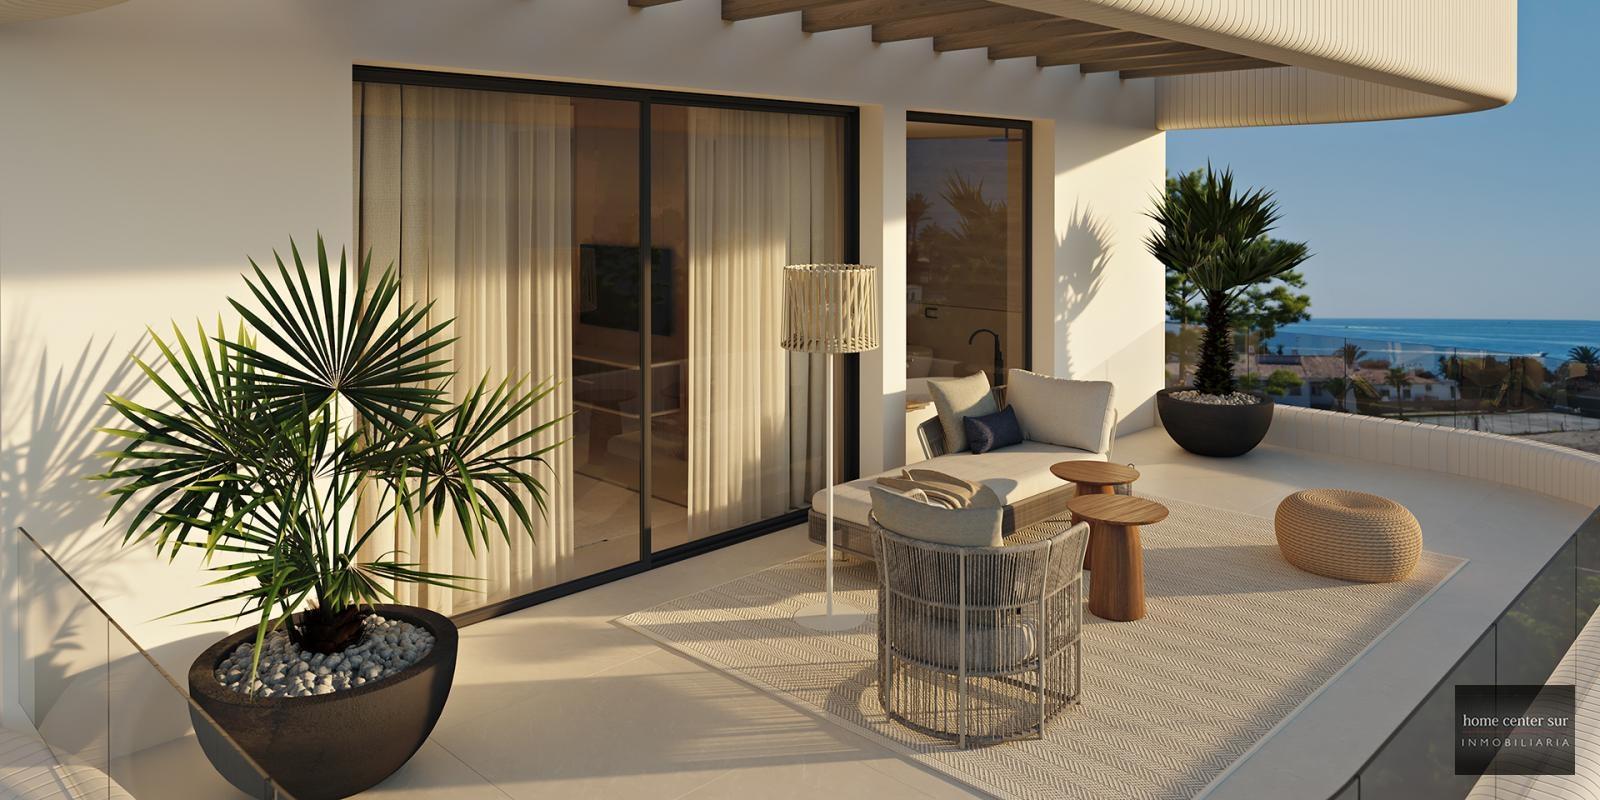 Villa de Lujo en venta en calle Bonanza 0 (Marbella), 2.100.000 €